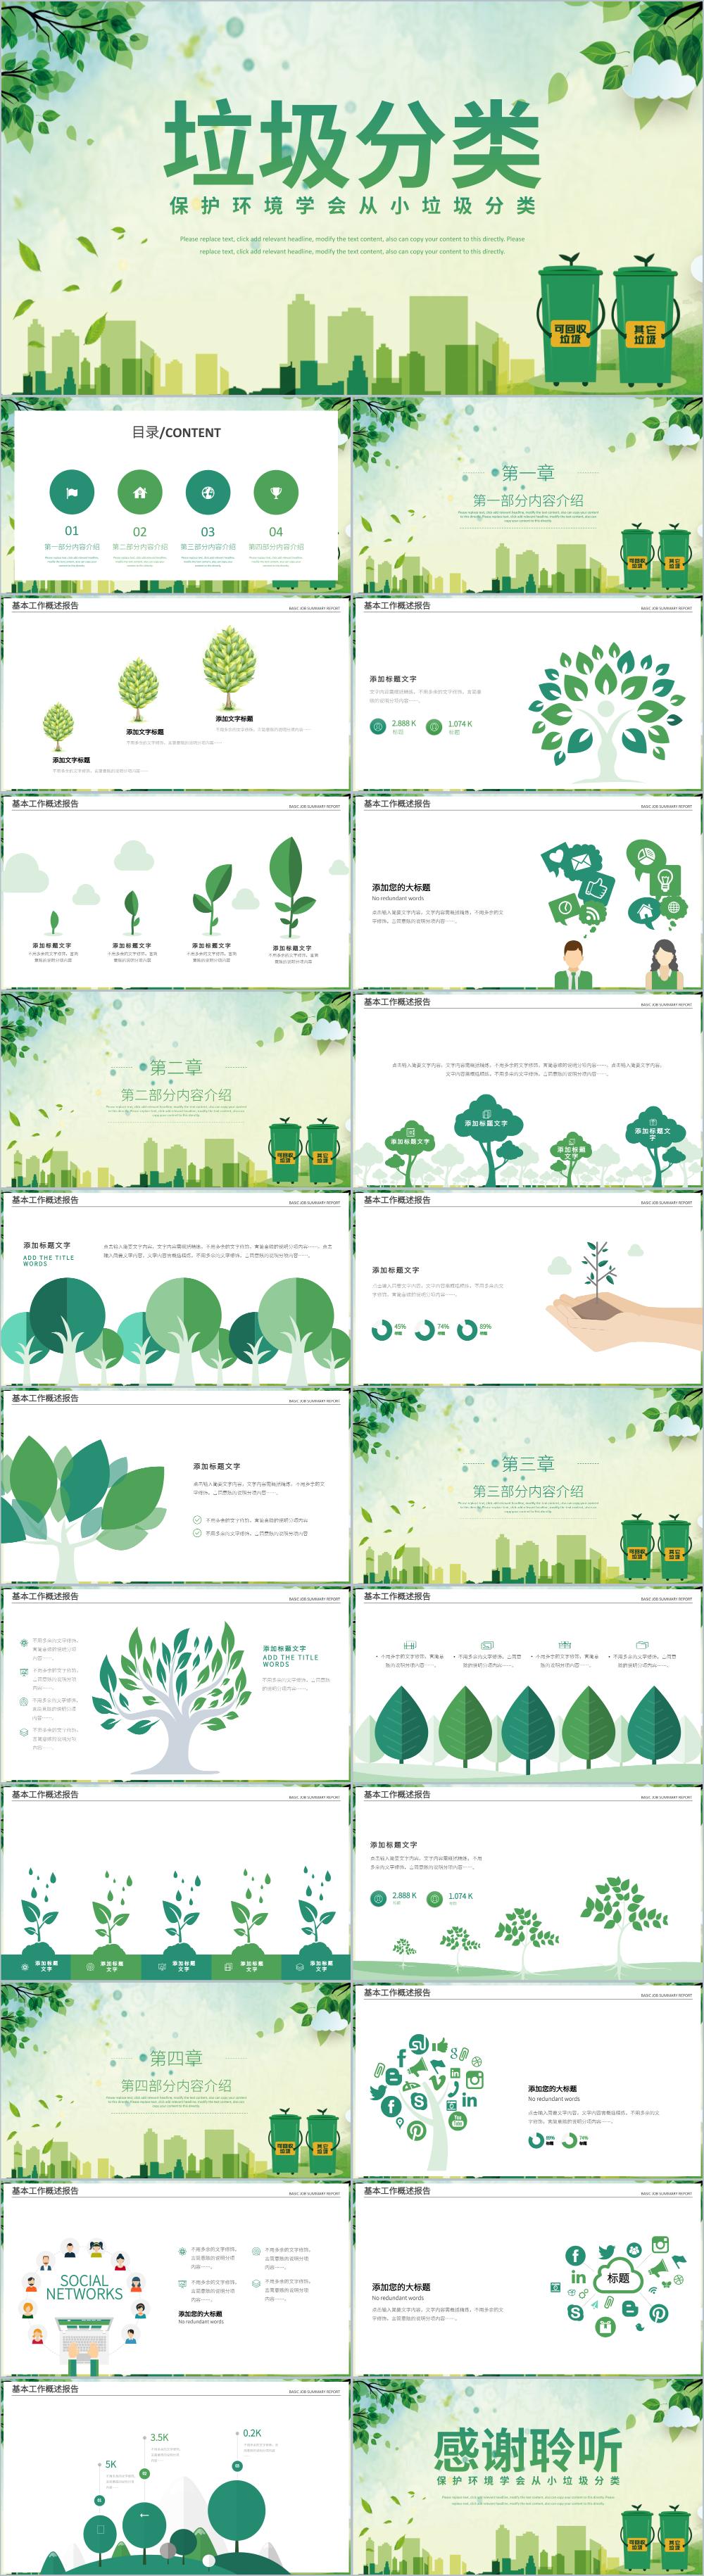 绿色环保垃圾分类低碳生活保护环境PPT模板